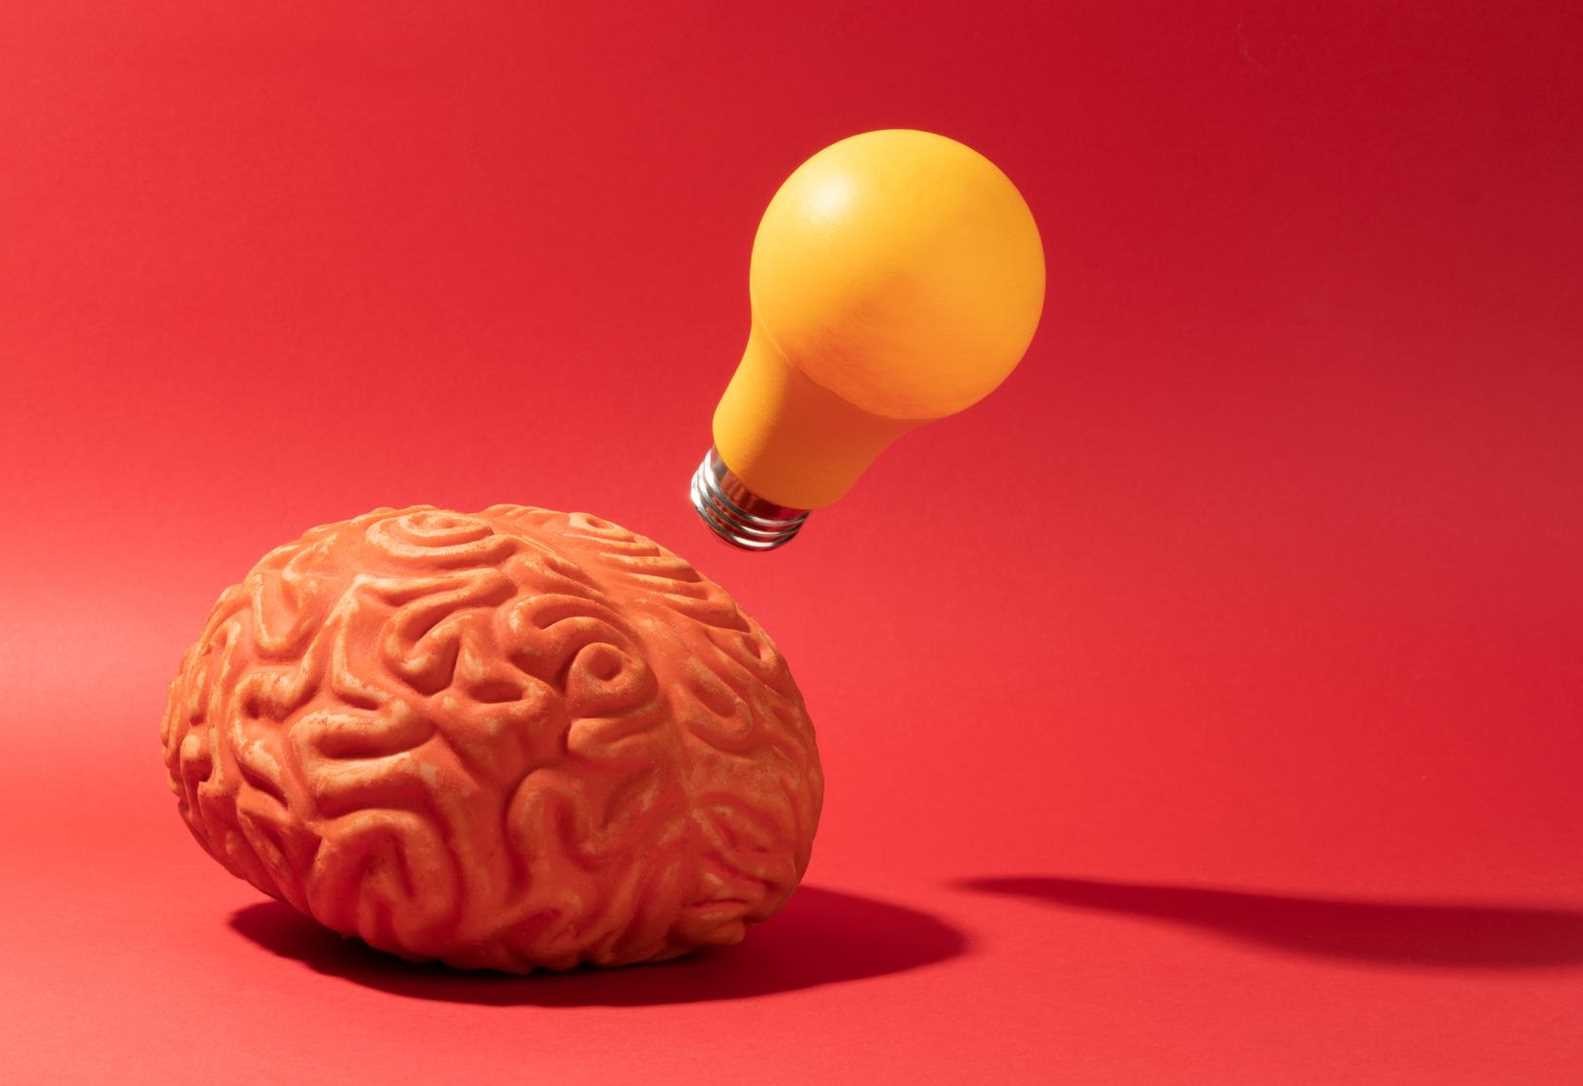 Тест разминка для мозга: "Феноменальный ум" - попробуйте решить в уме эти примеру